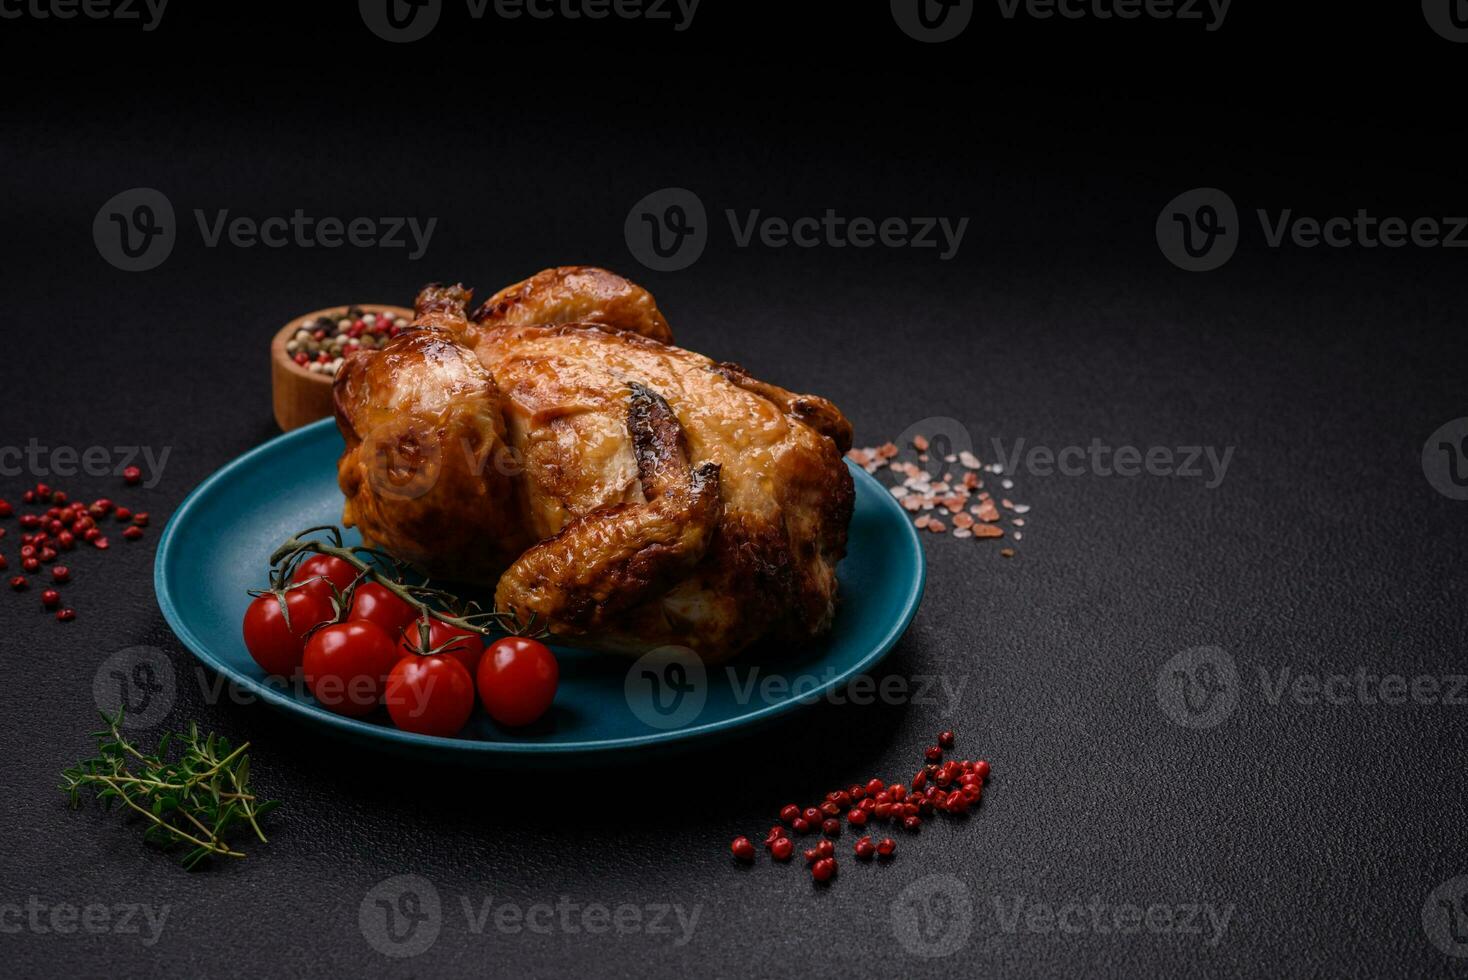 Krispig utsökt hela bakad kyckling med grönsaker, salt och kryddor foto